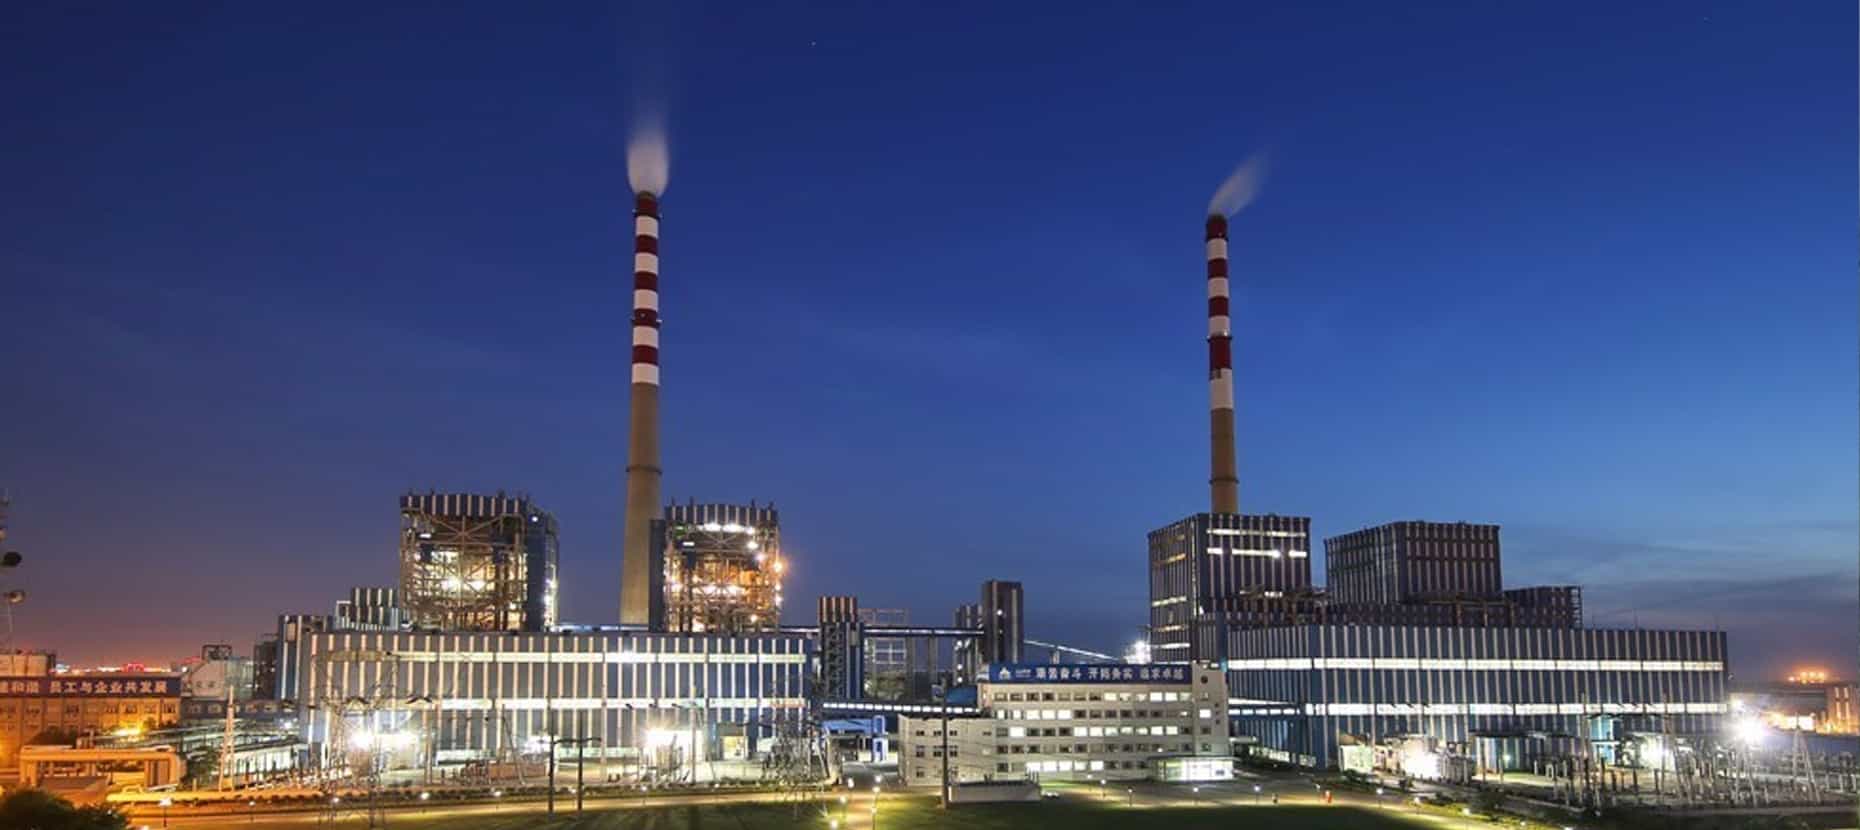 天津大港华实发电有限责任发电厂1、2号炉输灰系统3、4路增容改造工程